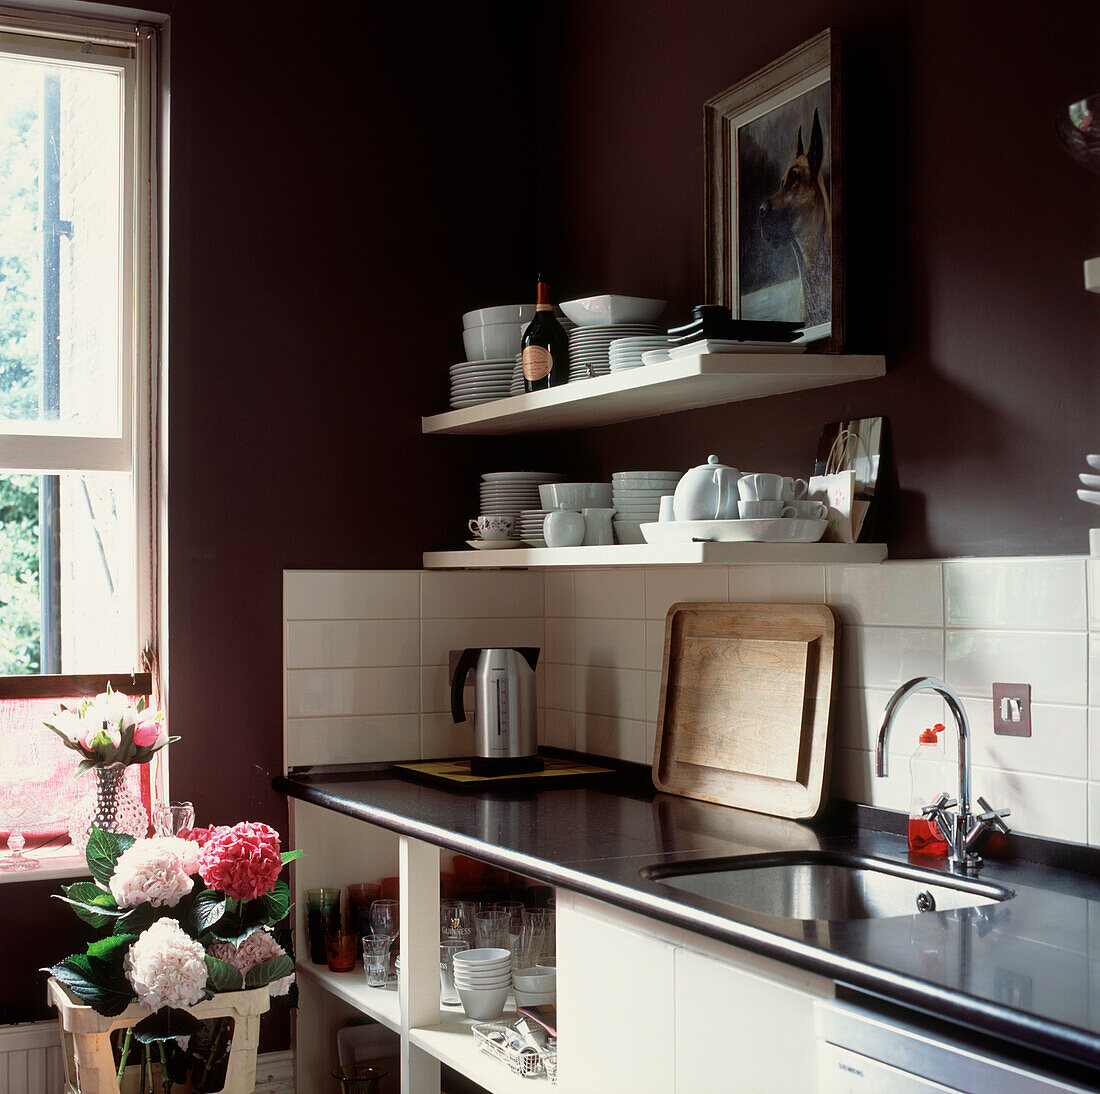 Detail der Küchenspüle und der Arbeitsplatten aus schwarzem Granit mit offenen Stauraumlösungen